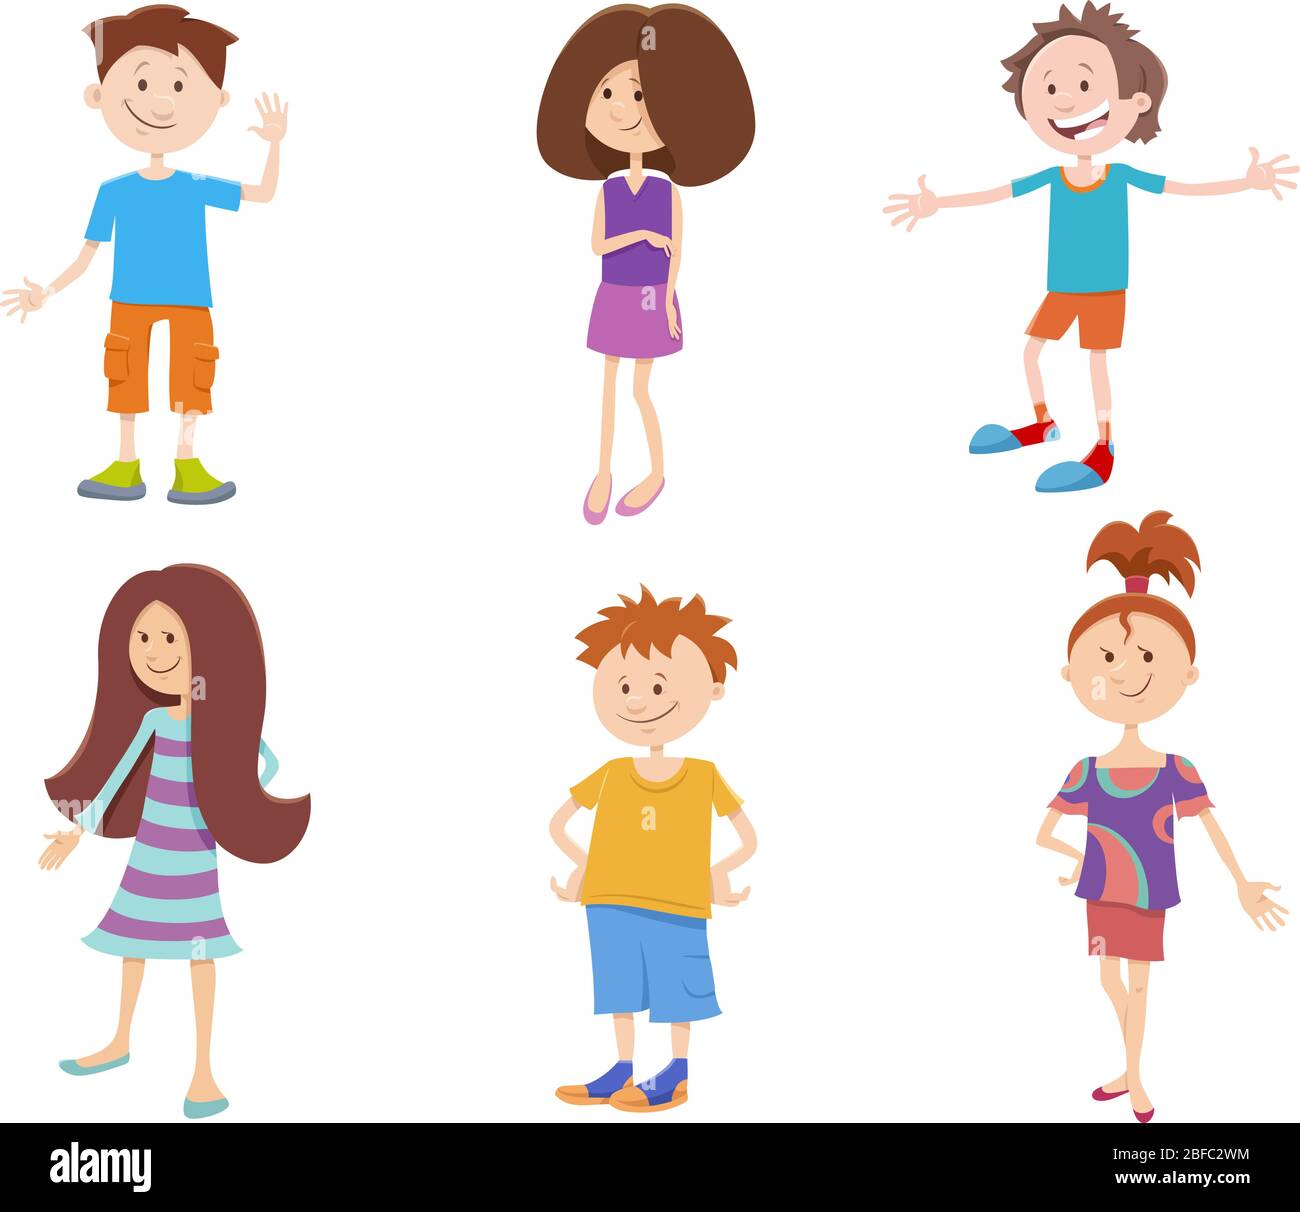 Cartoon-Illustration von Fröhlichen Kindern und Jugendlichen Figuren Gesetzt Stock Vektor